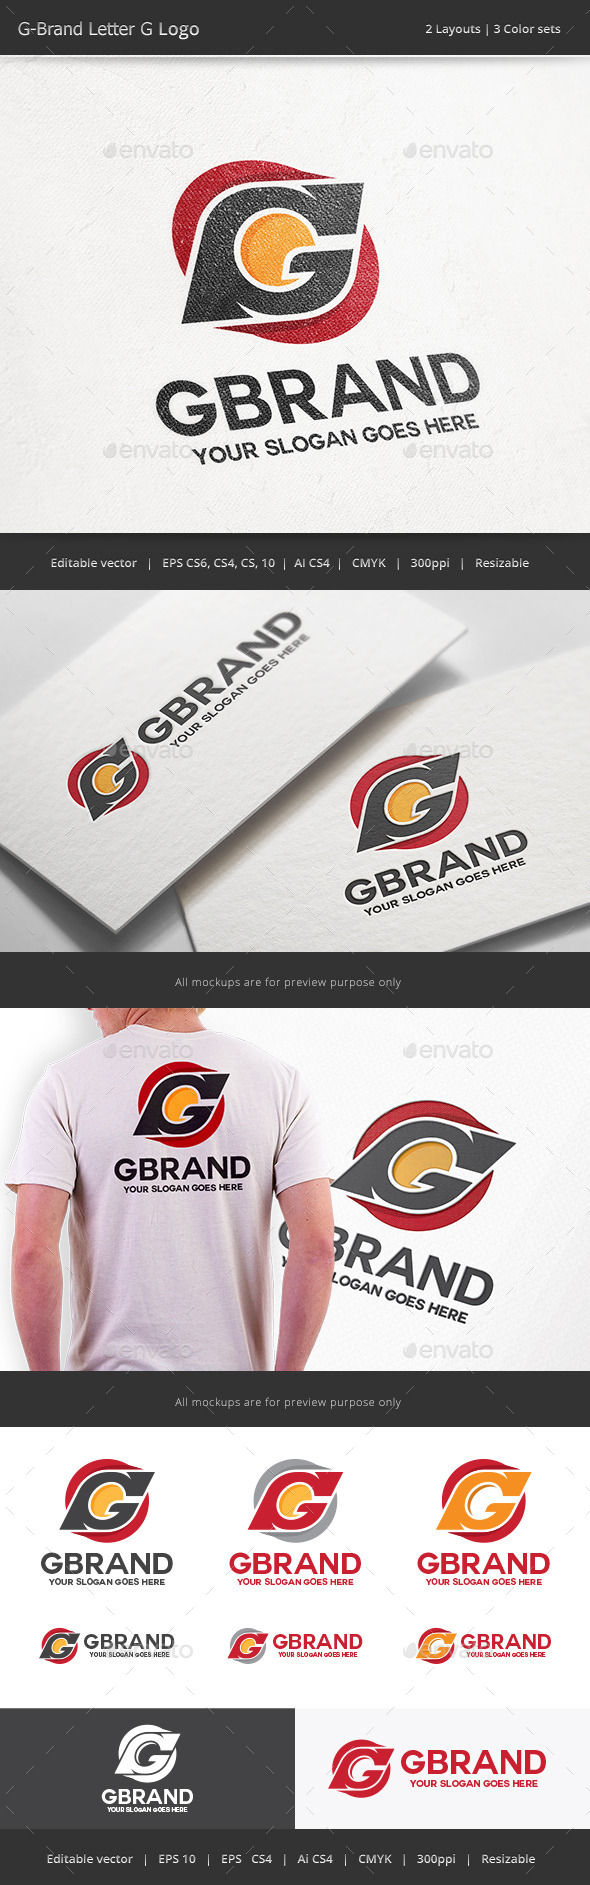 G Brand Letter G Logo